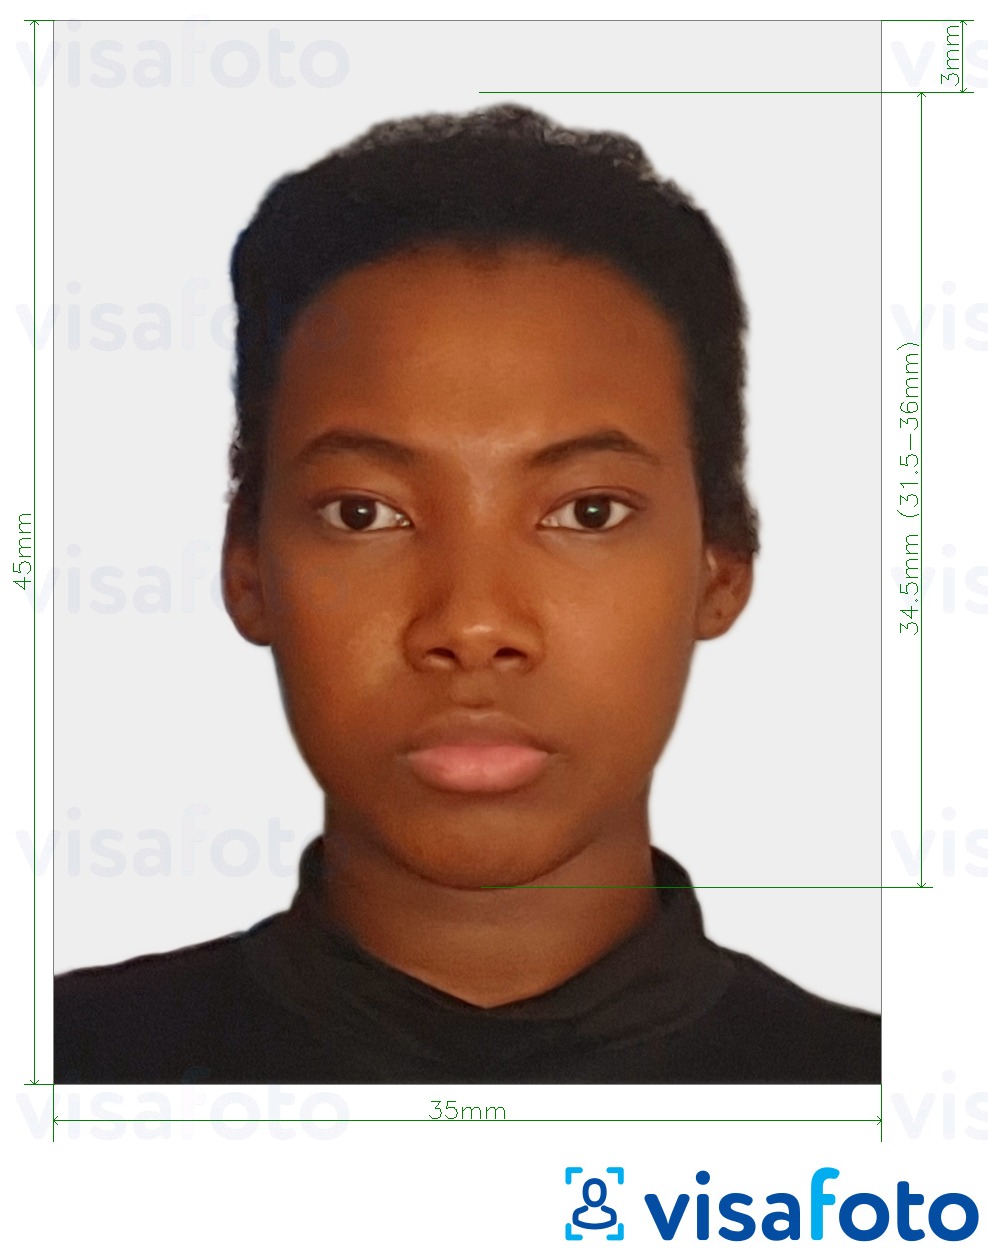  Togo viisa 4.5x3.5 cm (45x35mm) fotonäidis koos täpse infoga mõõtude kohta.